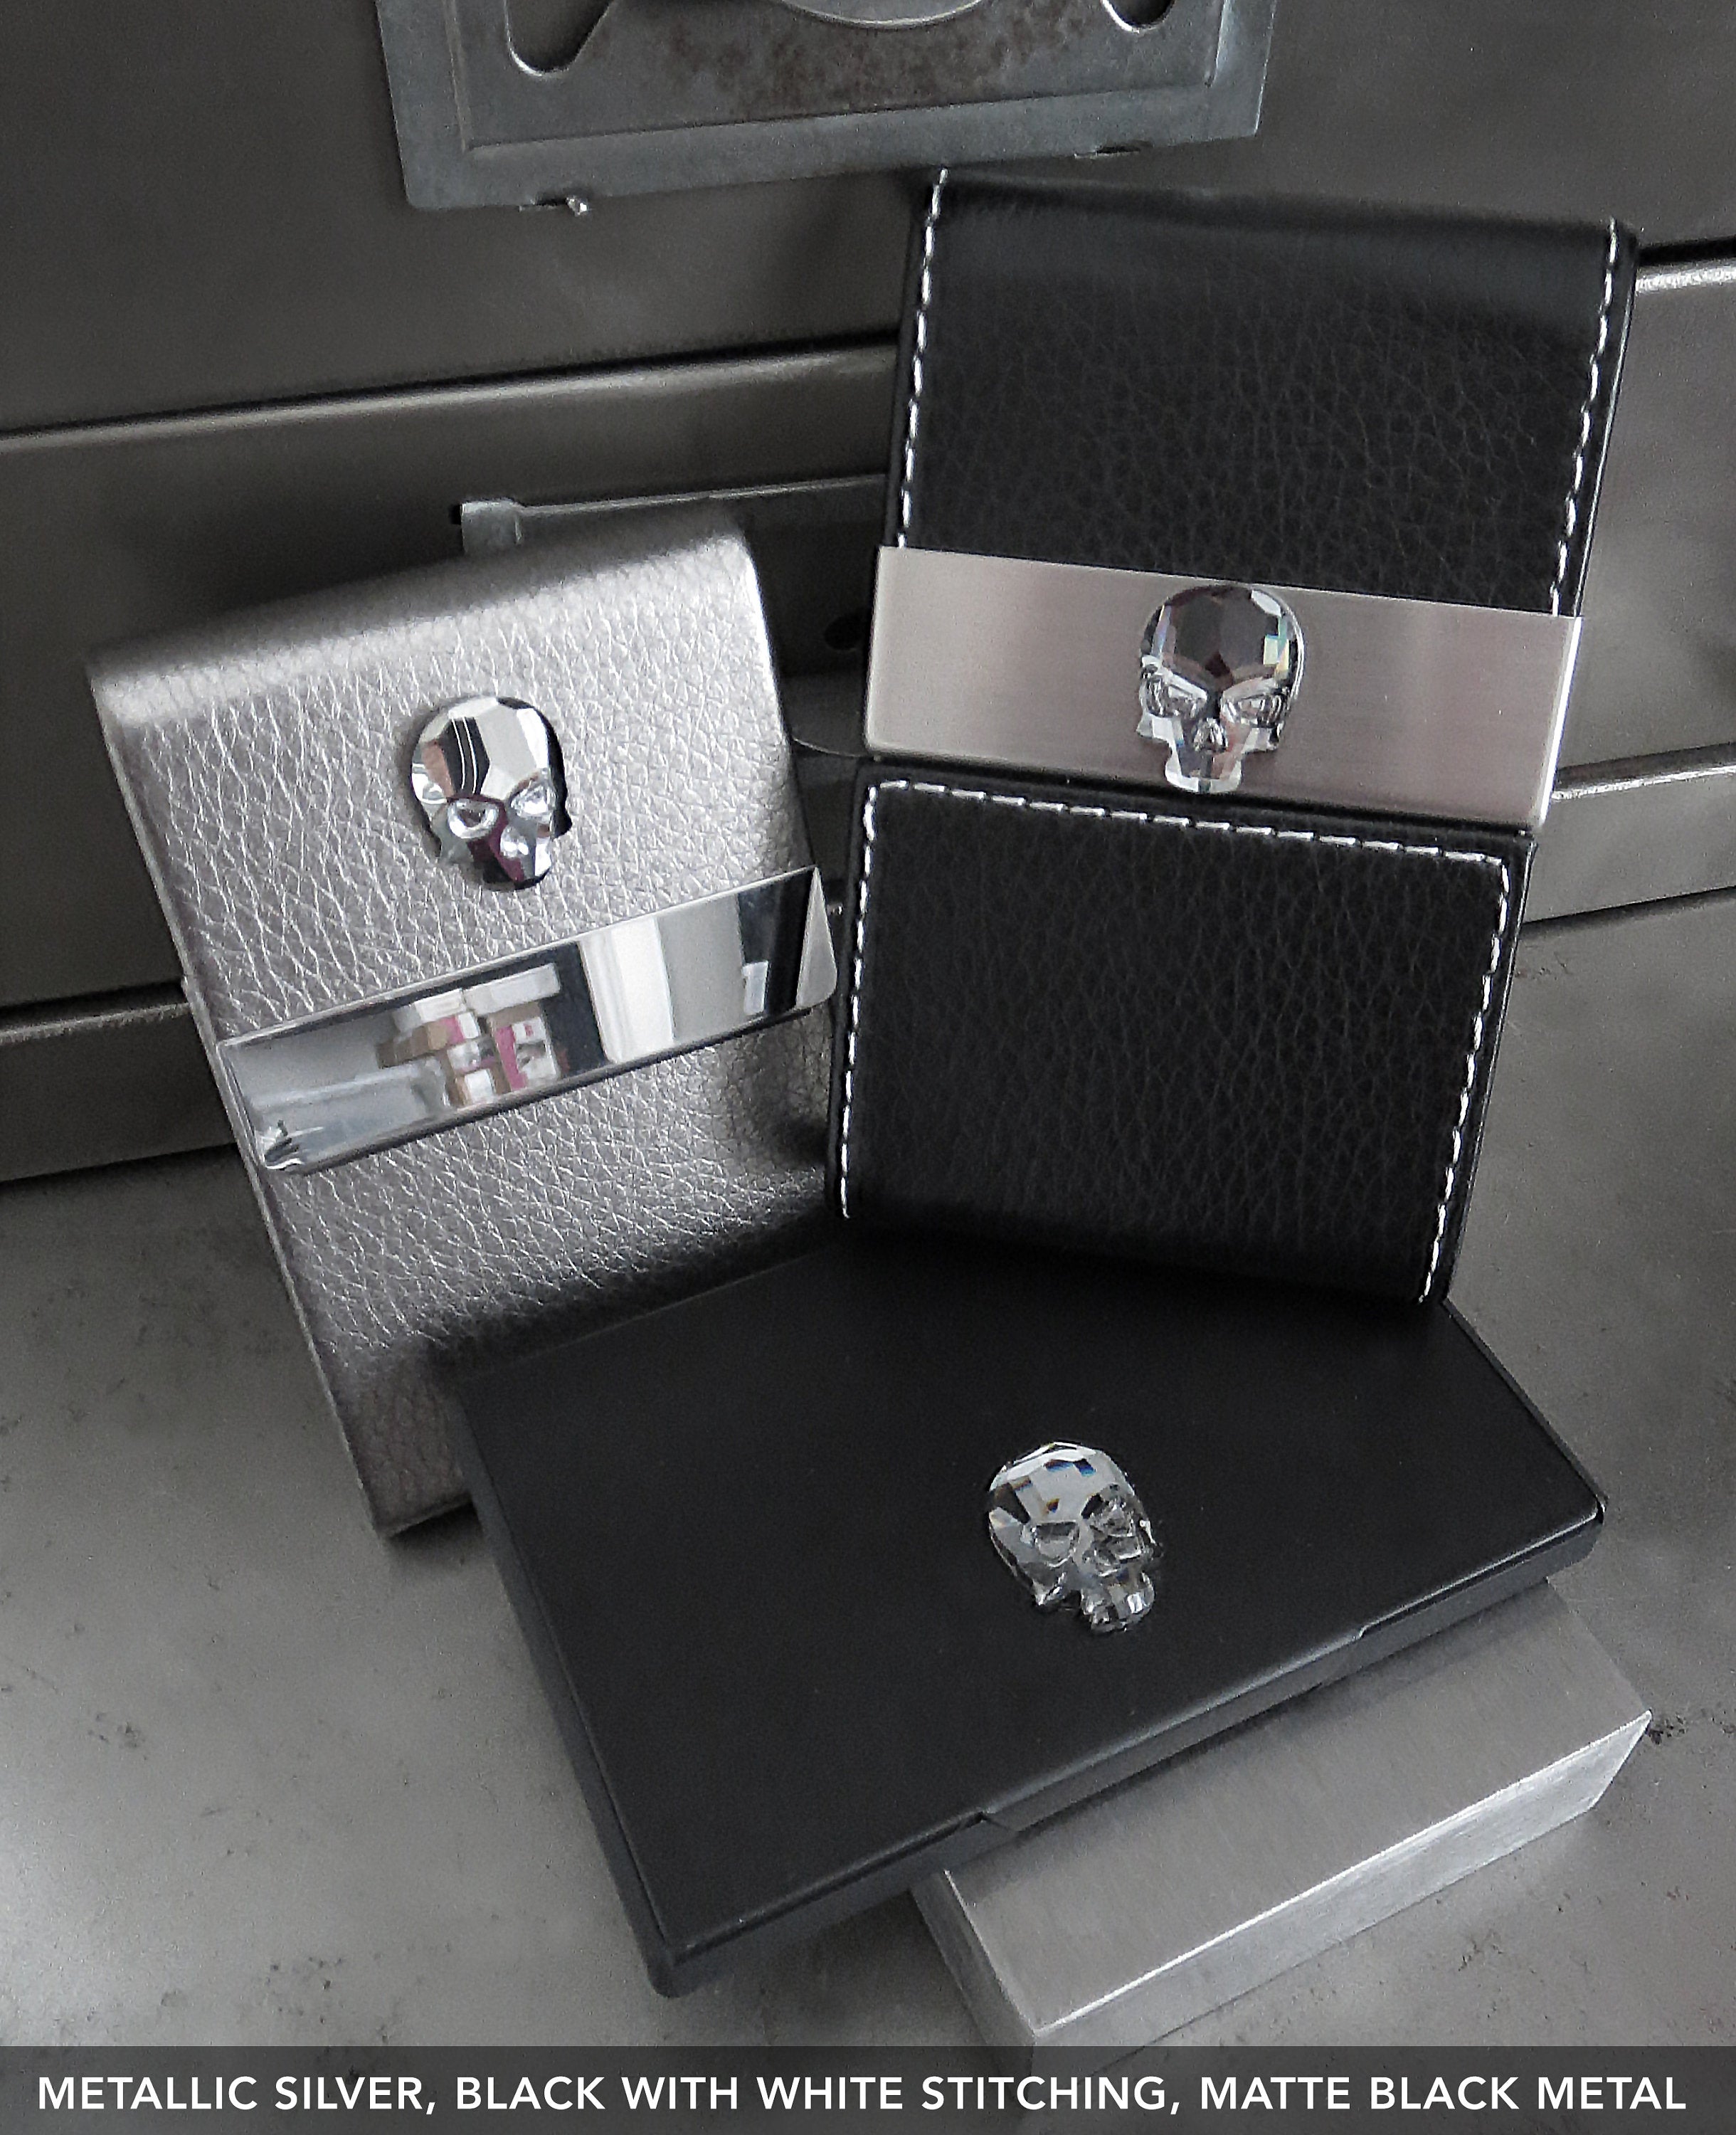 Crystal Skull Business Card Holder - Matte Black Metal Card Case, Slim Wallet for Money, ID, Credit Cards - Unisex Minimalist Modern Design